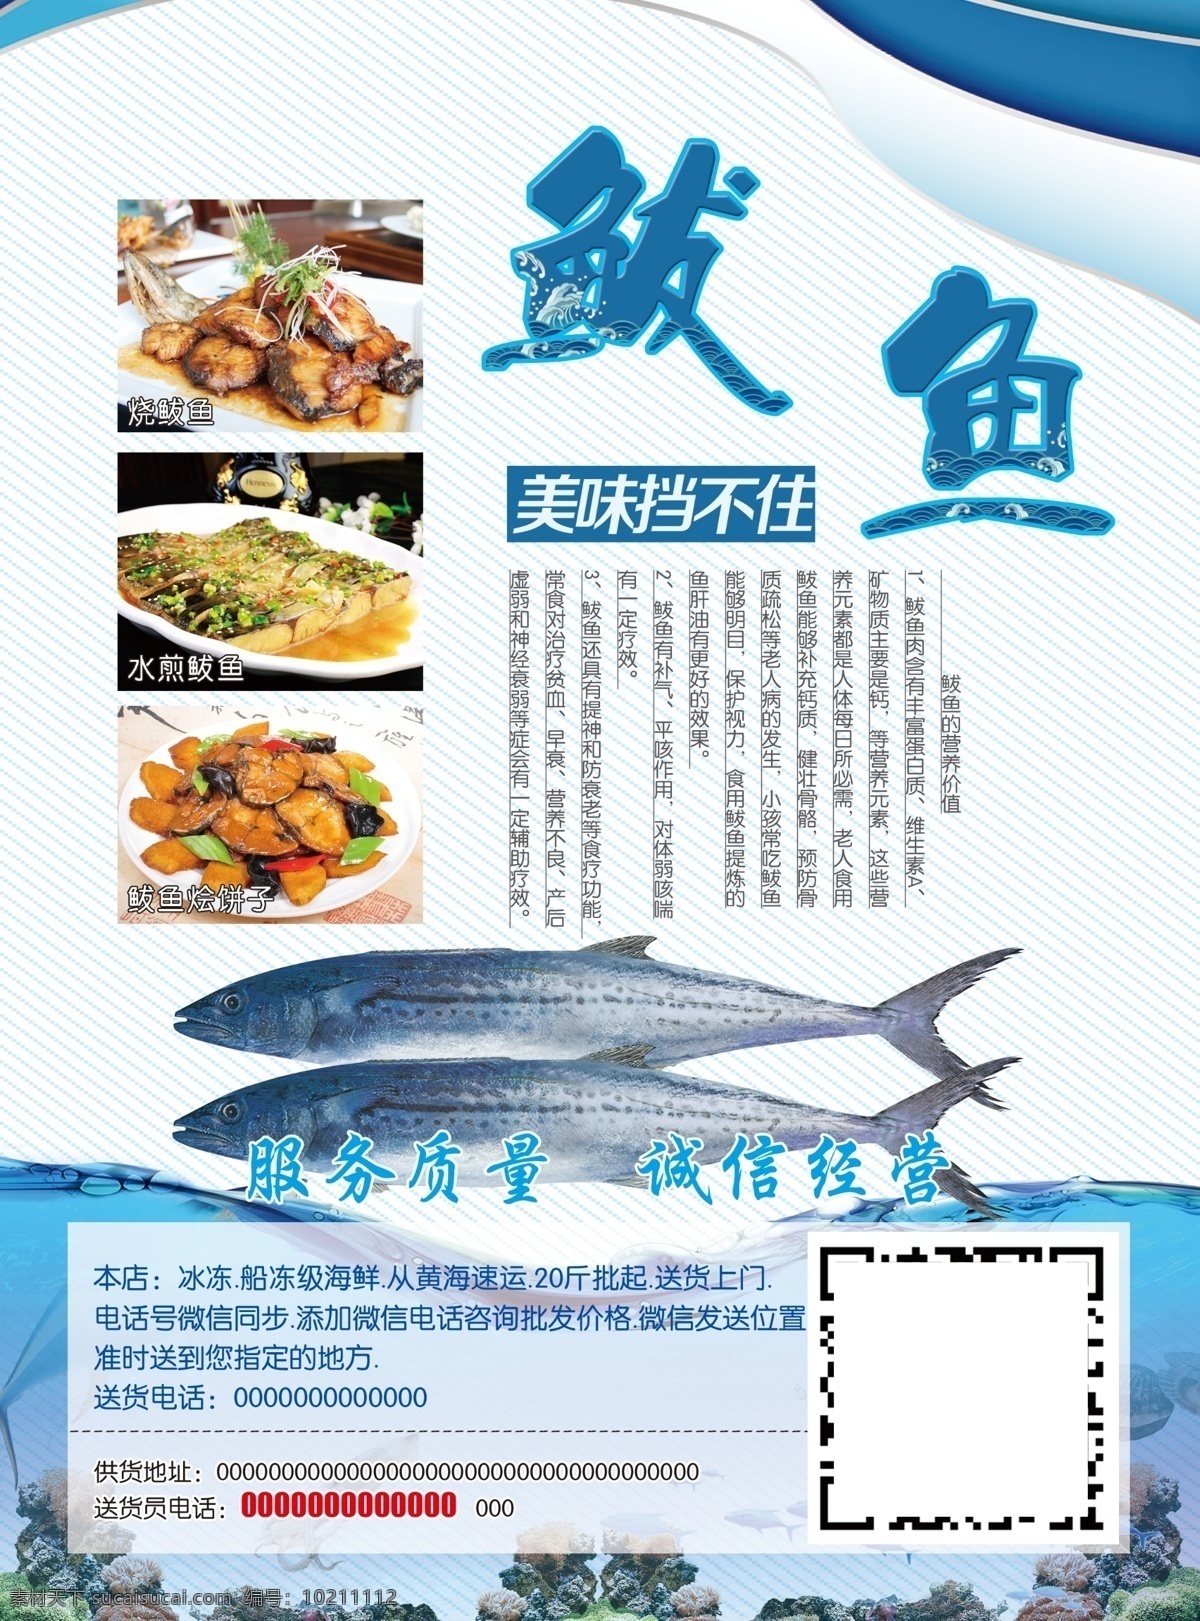 鲅鱼 简介 做法 鲅鱼做法 鲅鱼宣传单 海鲜背景 鲅鱼营养价值 dm宣传单